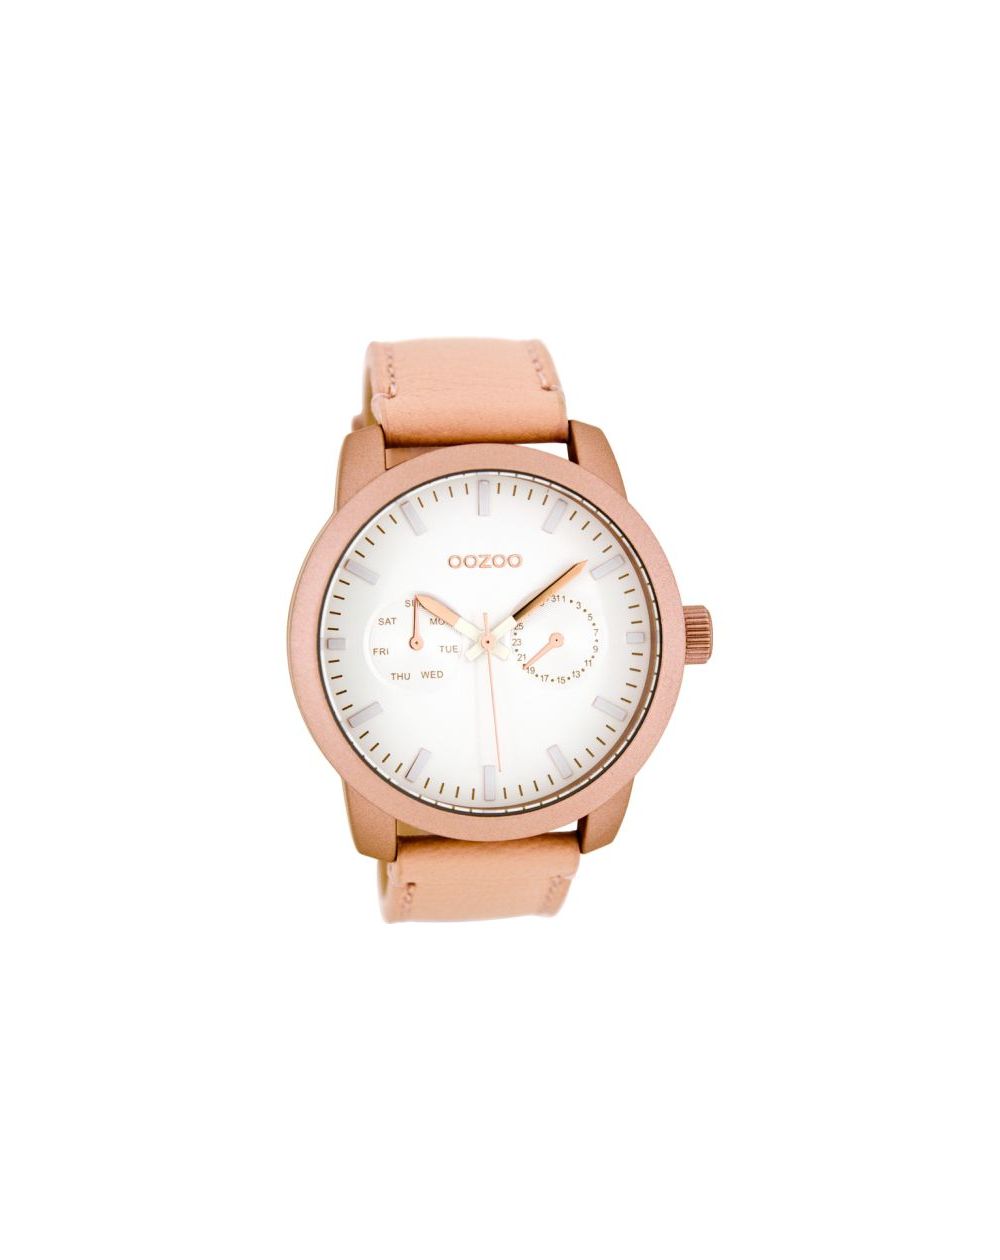 Oozoo montre/watch/horloge C8256